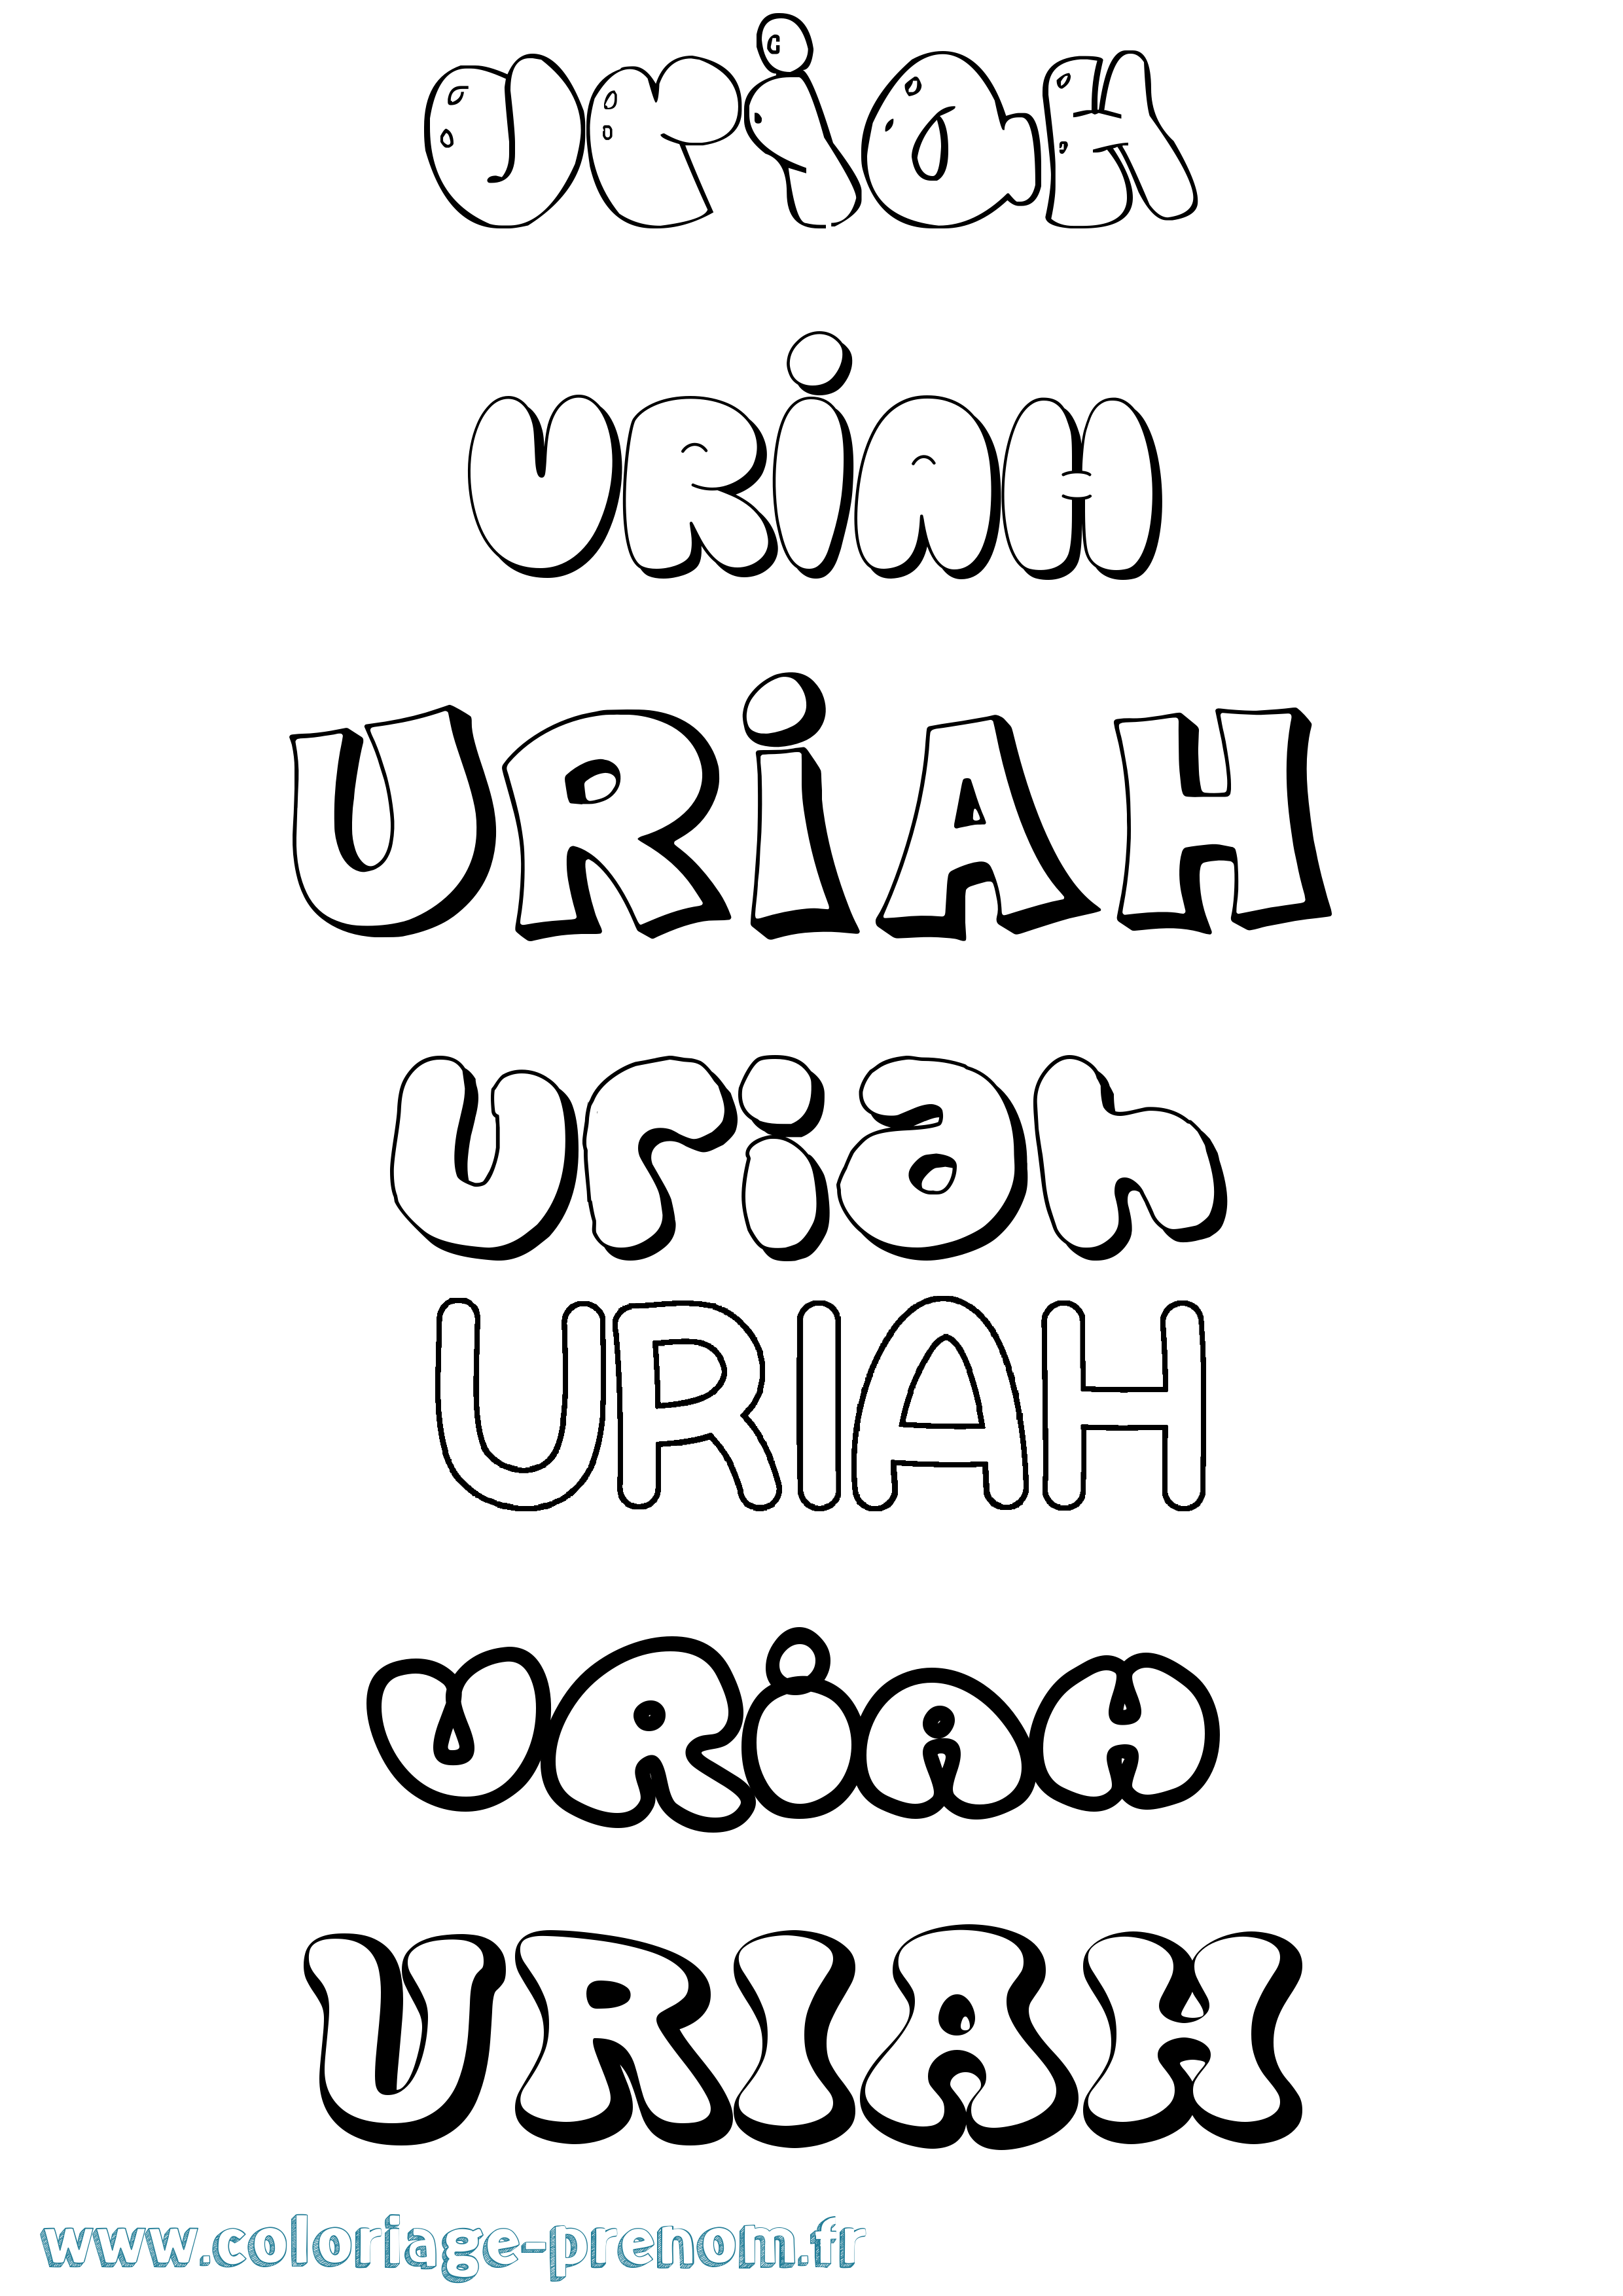 Coloriage prénom Uriah Bubble